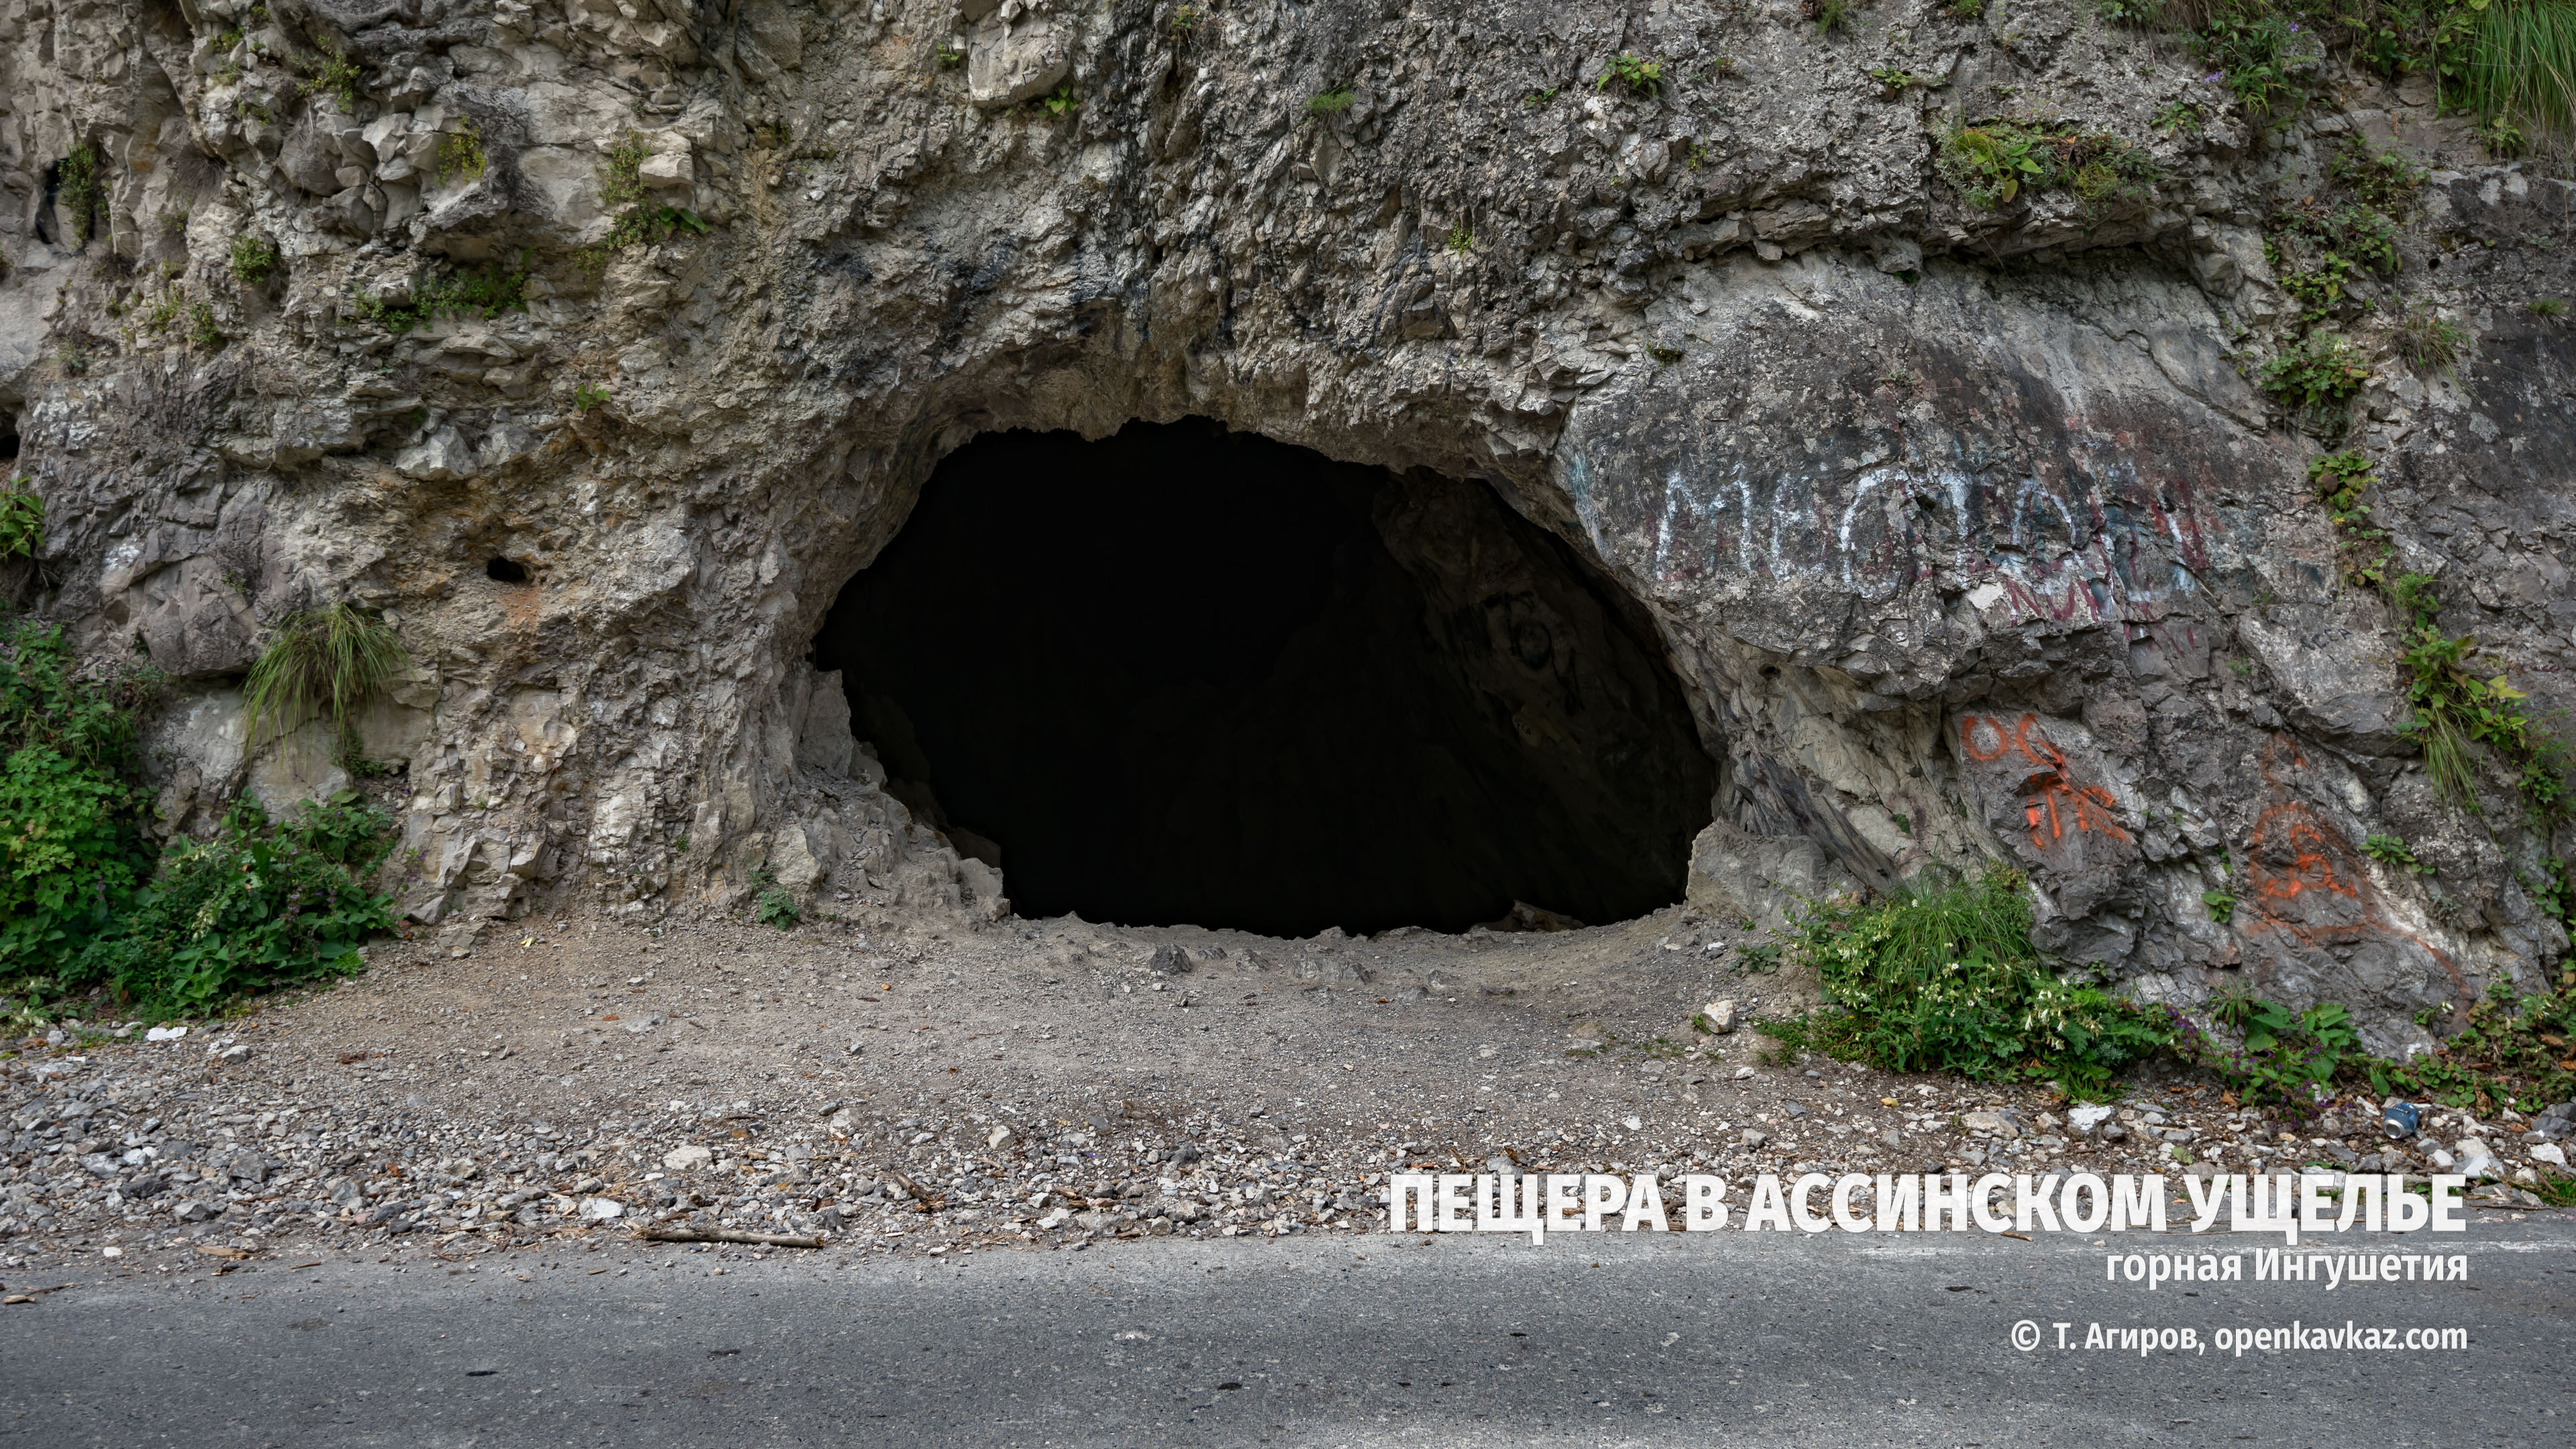 Пещера в Ассинском ущелье, Ингушетия